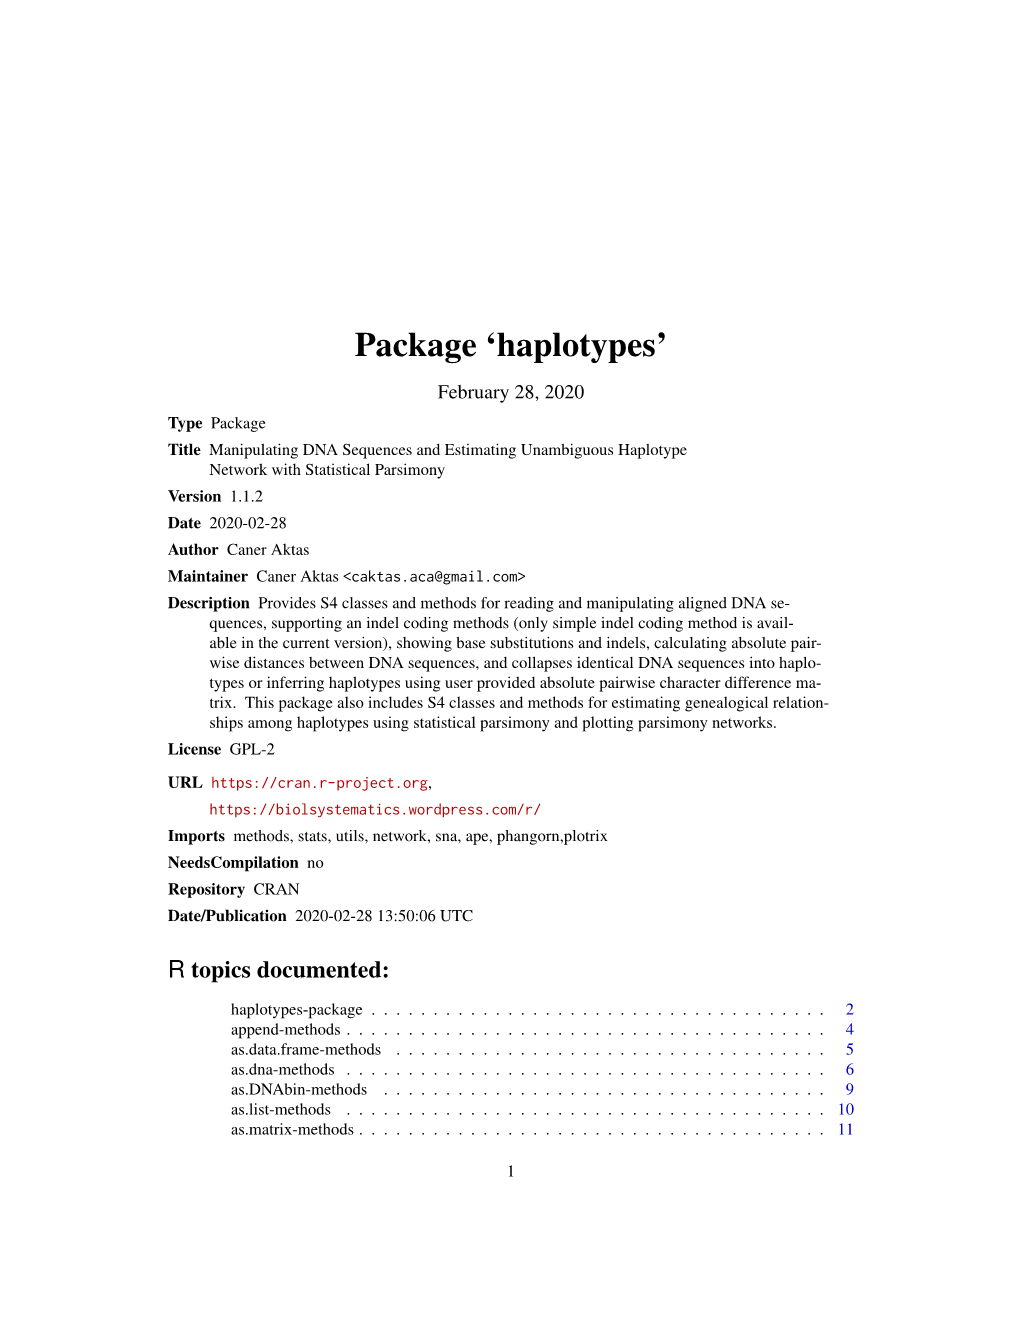 Package 'Haplotypes'